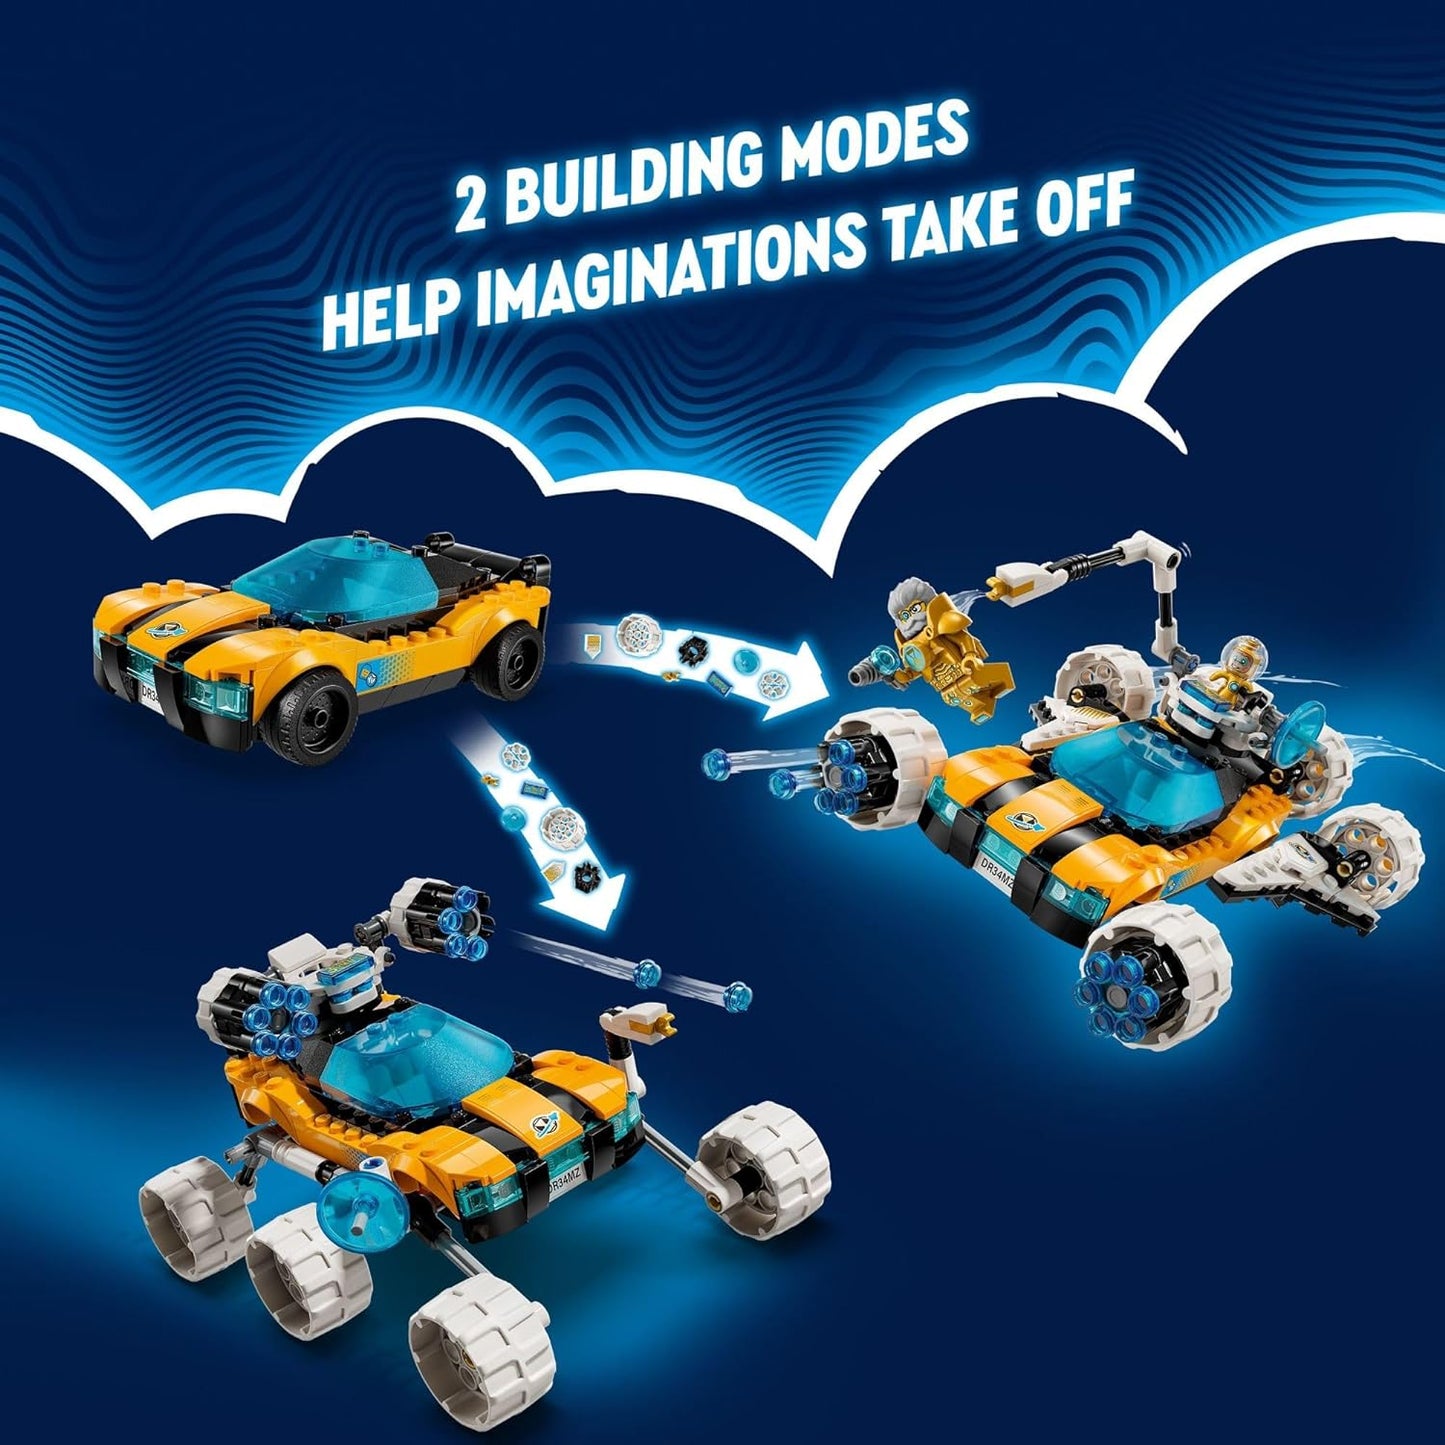 LEGO DREAMZzz Mr. Oz’s Space Car 71475